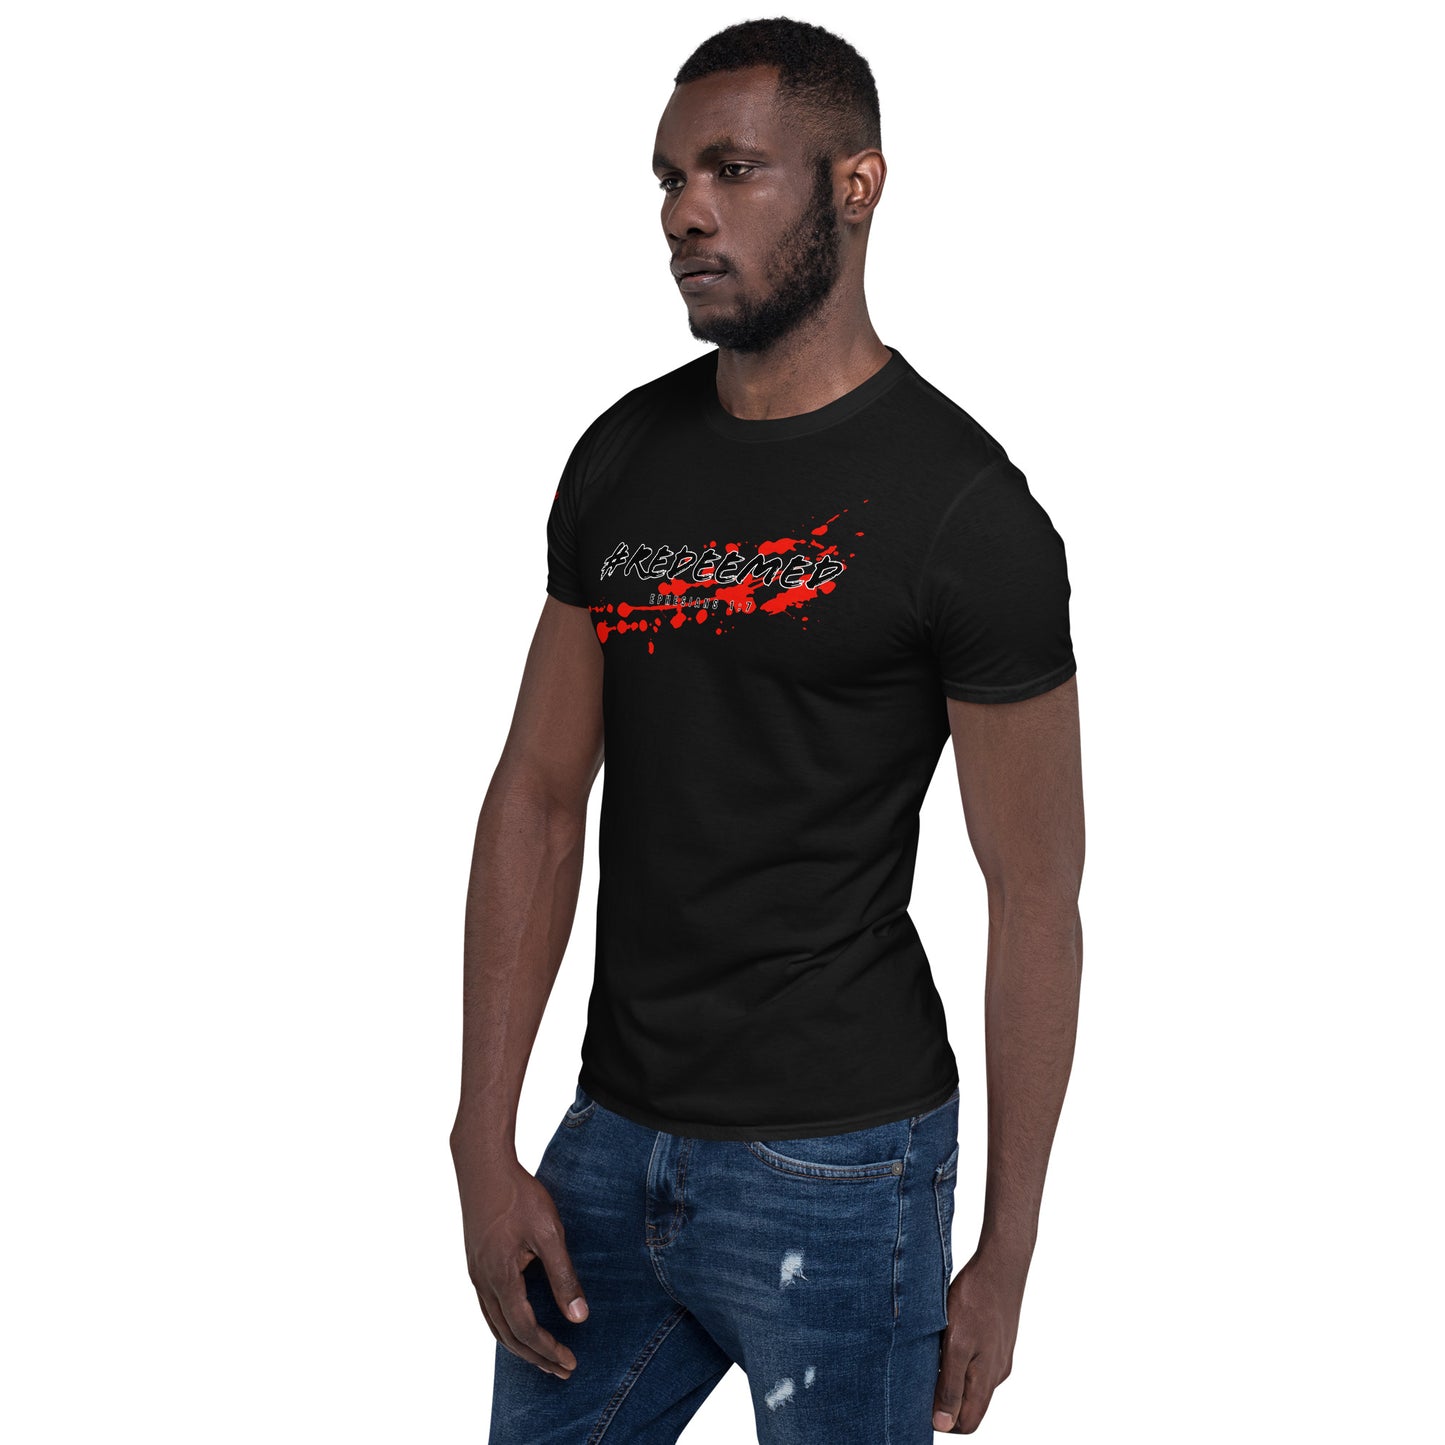 #REDEEMED- Short-Sleeve Unisex T-Shirt